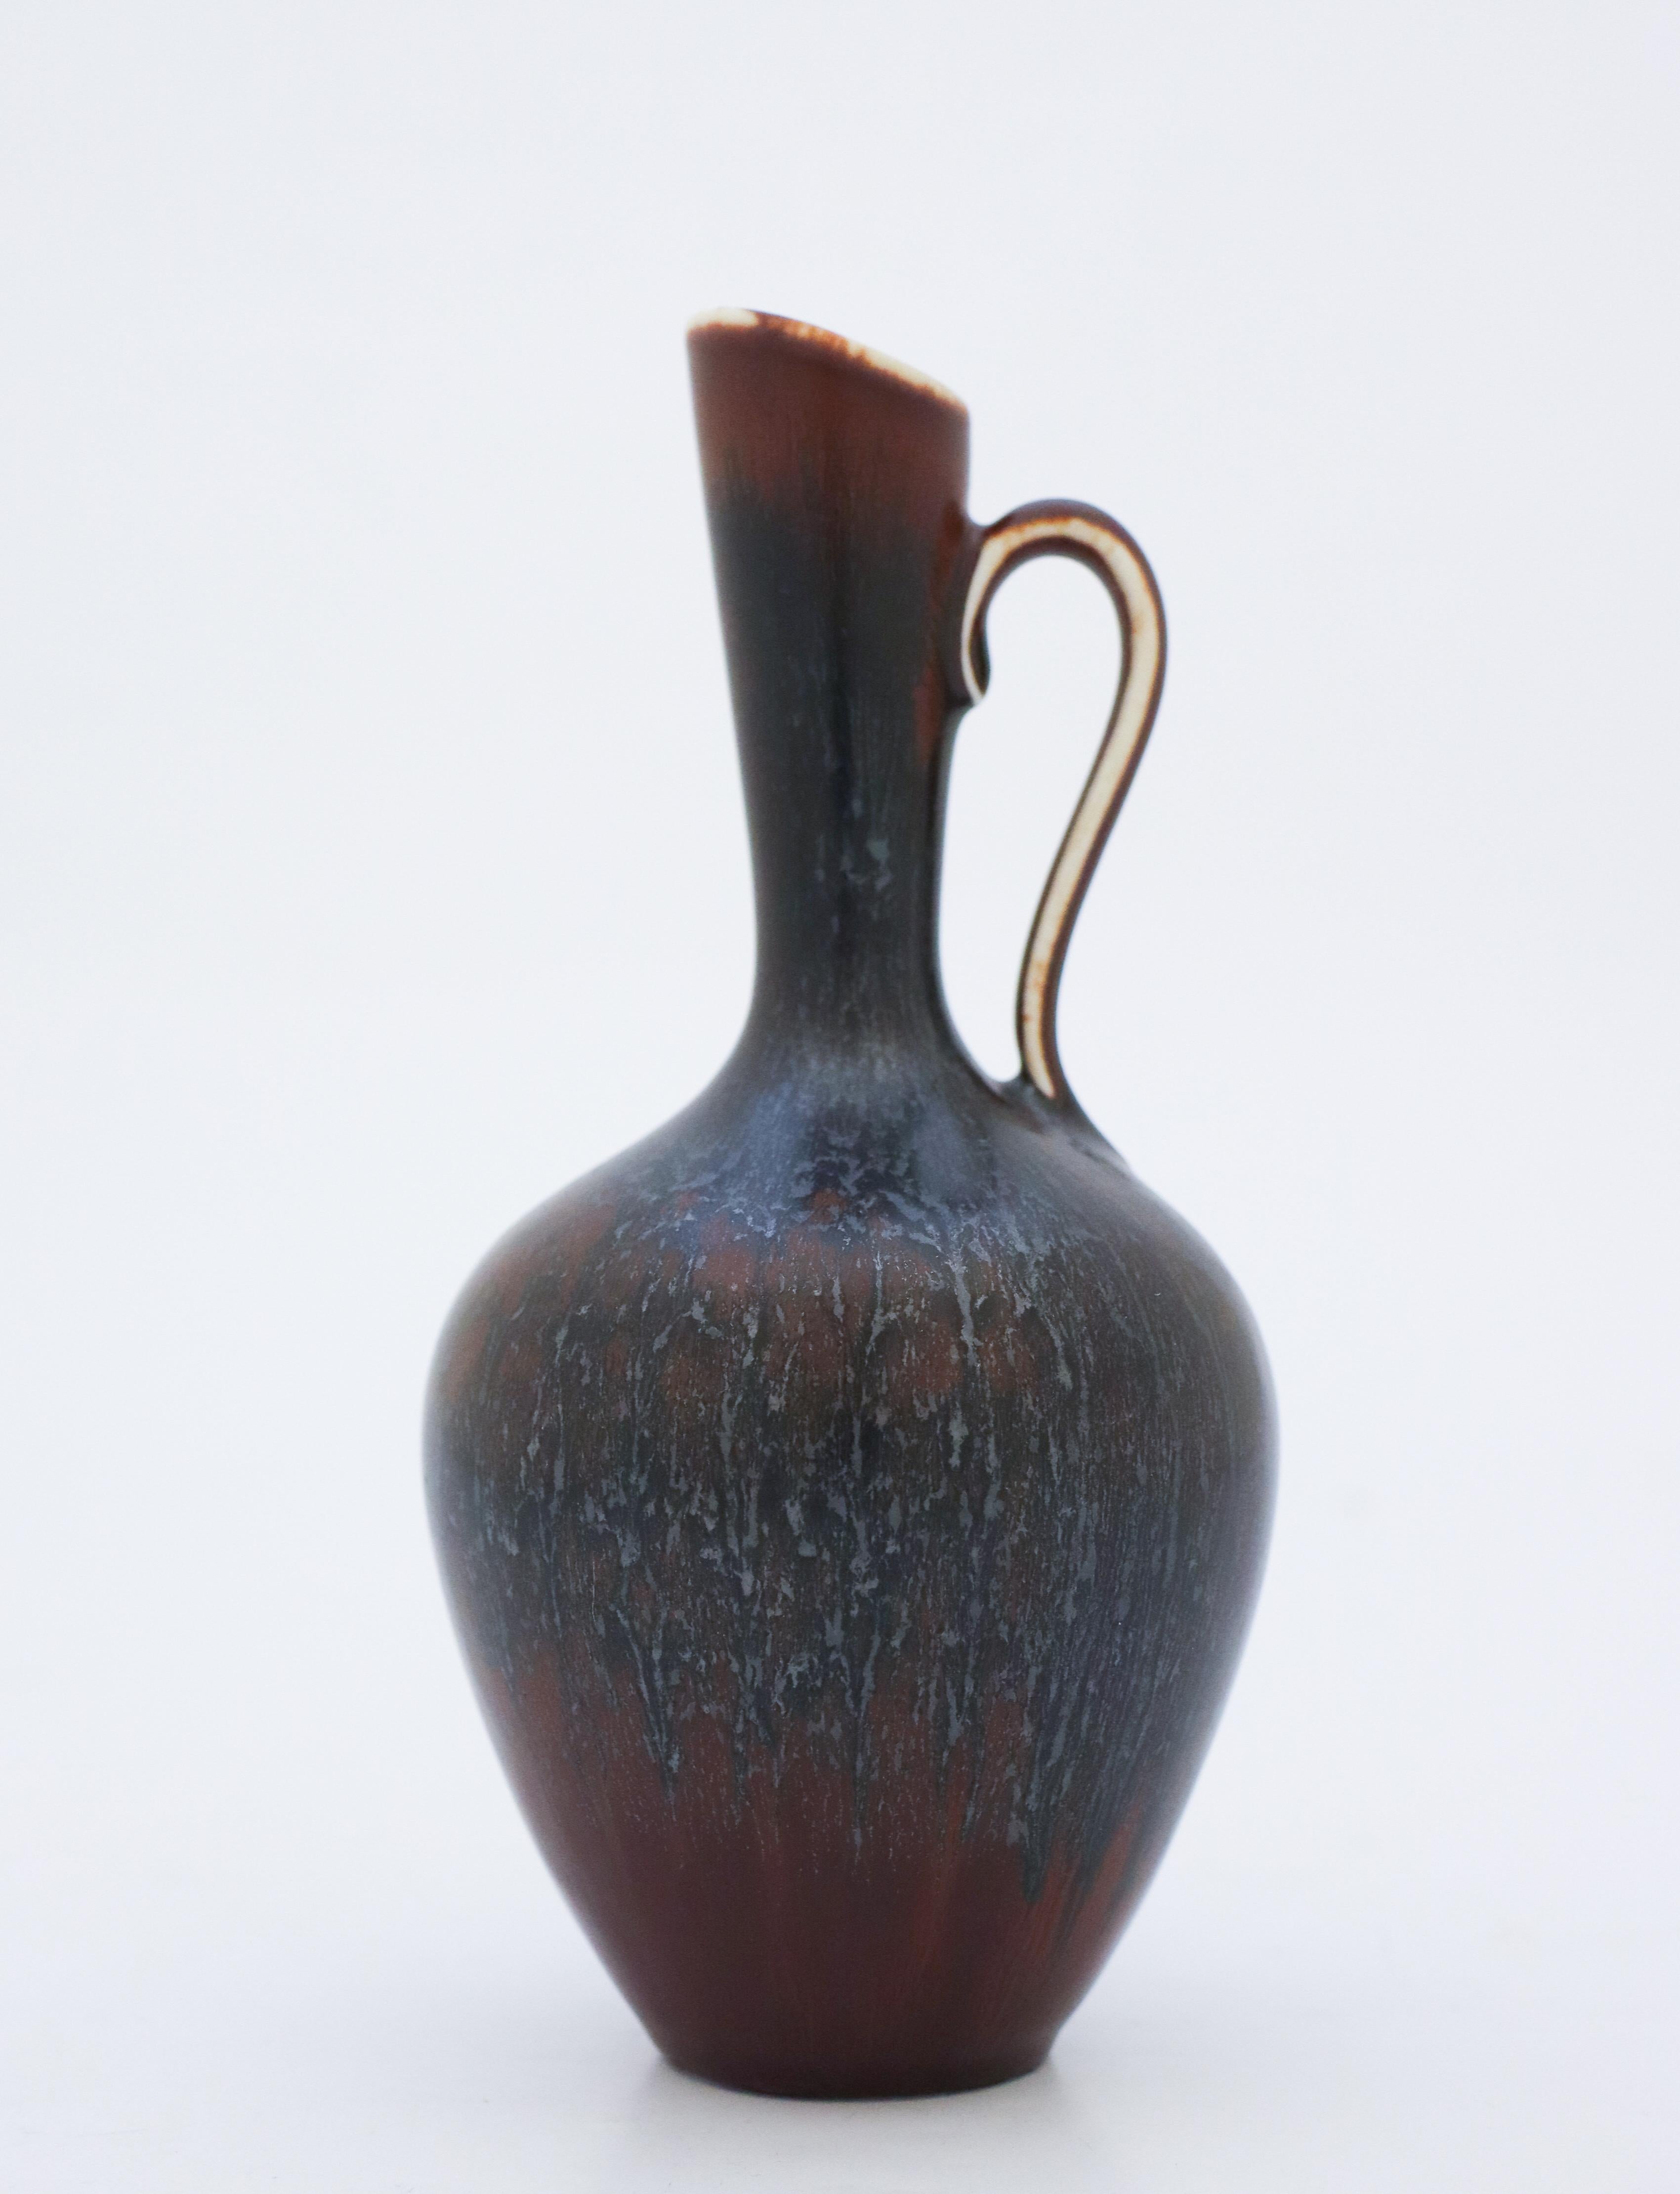 Un vase foncé (noir et brun) avec une belle glaçure, conçu par Gunnar Nylund à Rörstrand, il mesure 17,5 cm (7